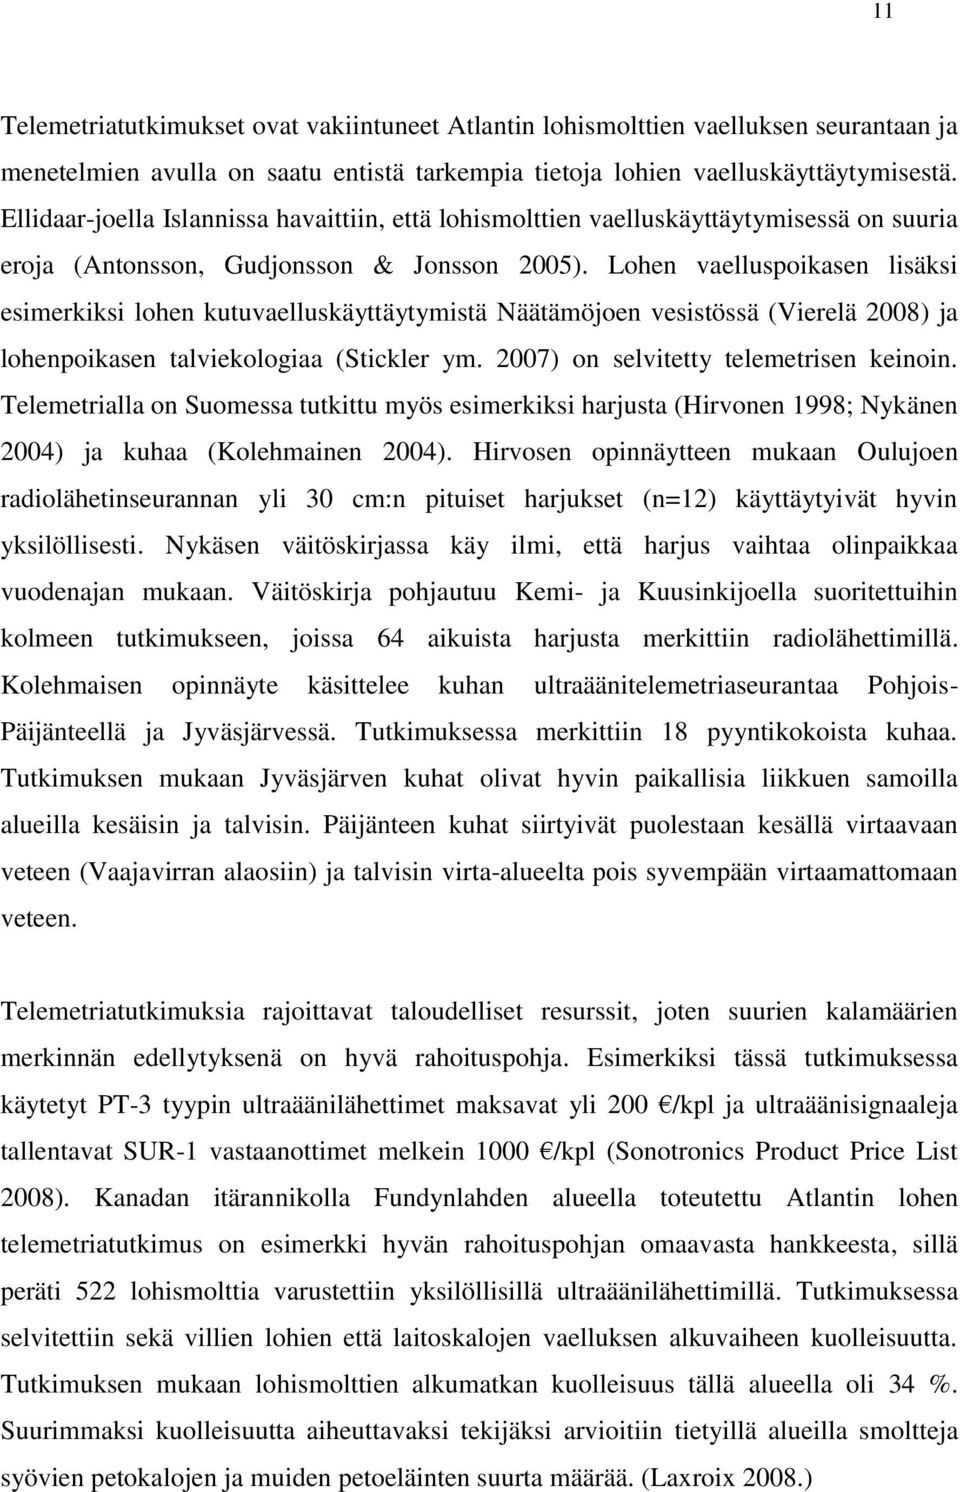 Lohen vaelluspoikasen lisäksi esimerkiksi lohen kutuvaelluskäyttäytymistä Näätämöjoen vesistössä (Vierelä 2008) ja lohenpoikasen talviekologiaa (Stickler ym. 2007) on selvitetty telemetrisen keinoin.